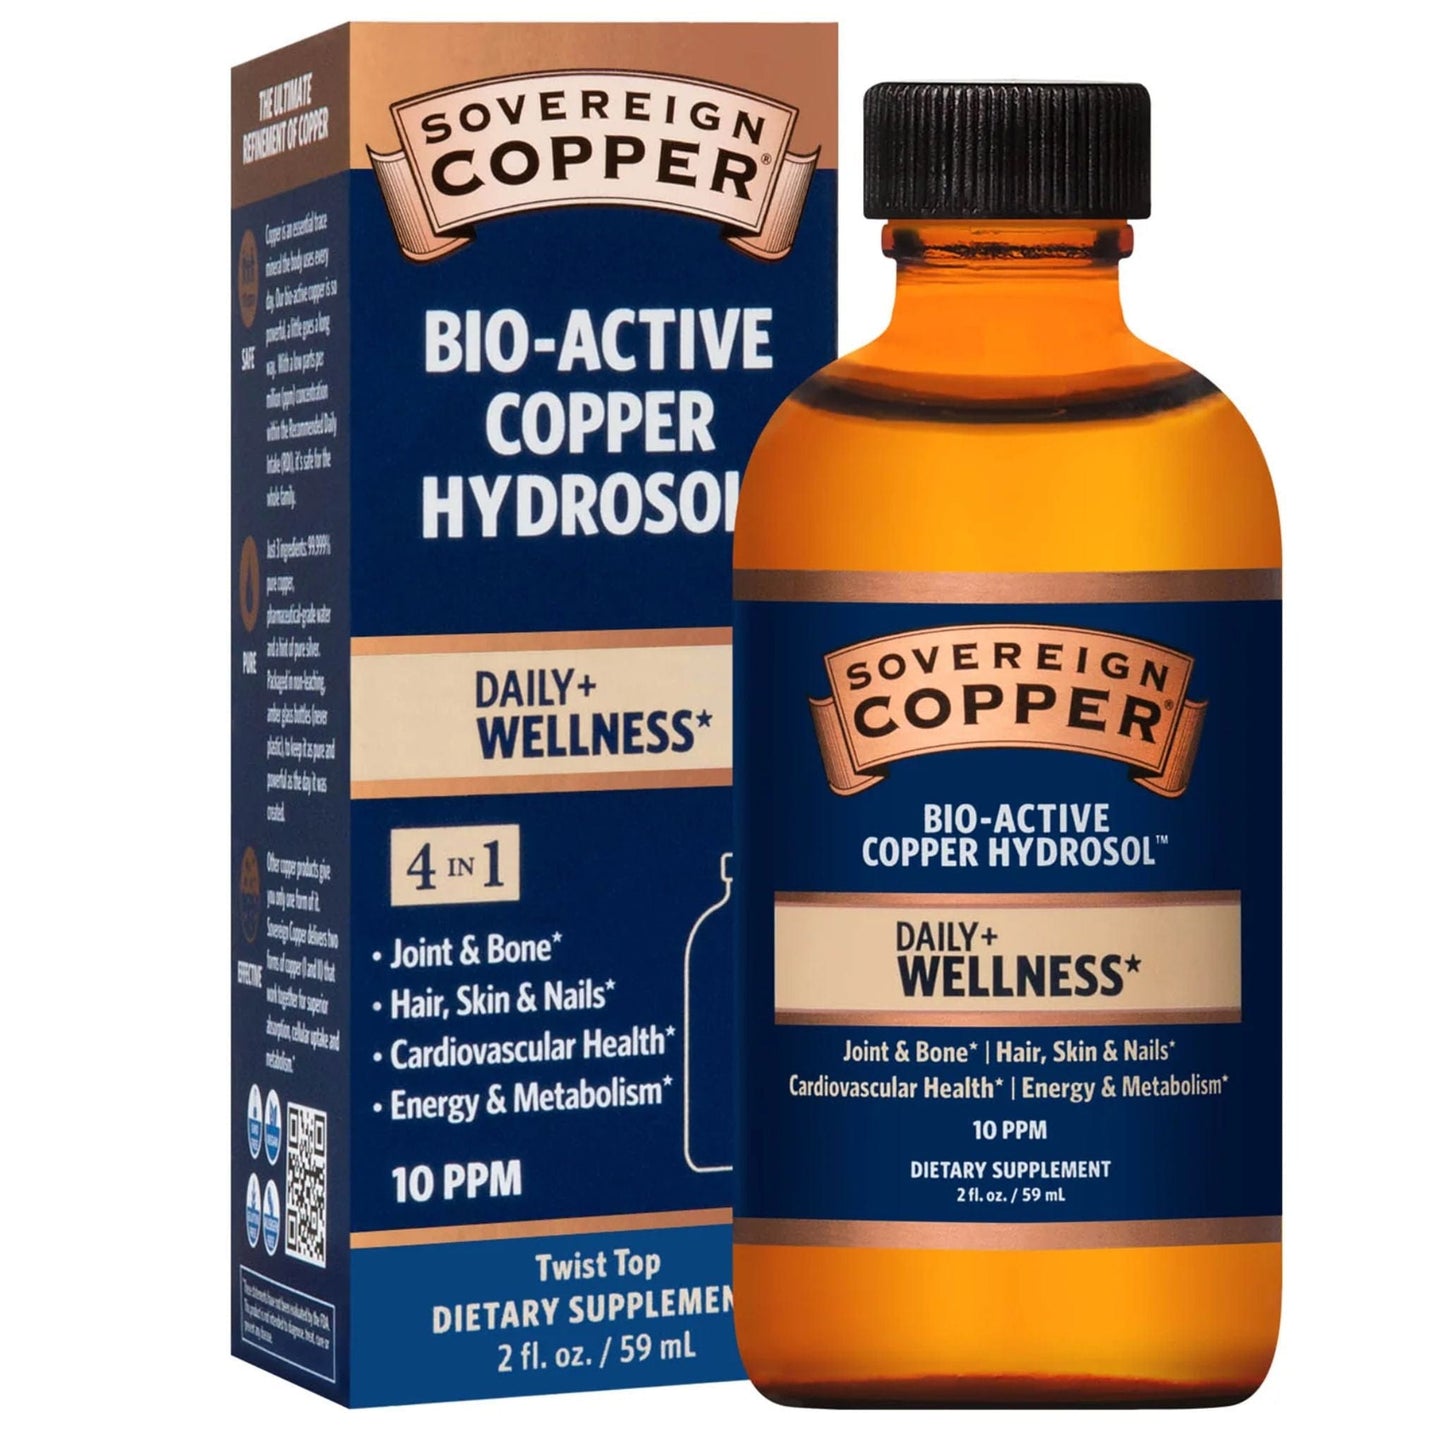 59ml | Sovereign Copper Bio-Active Copper Hydrosol